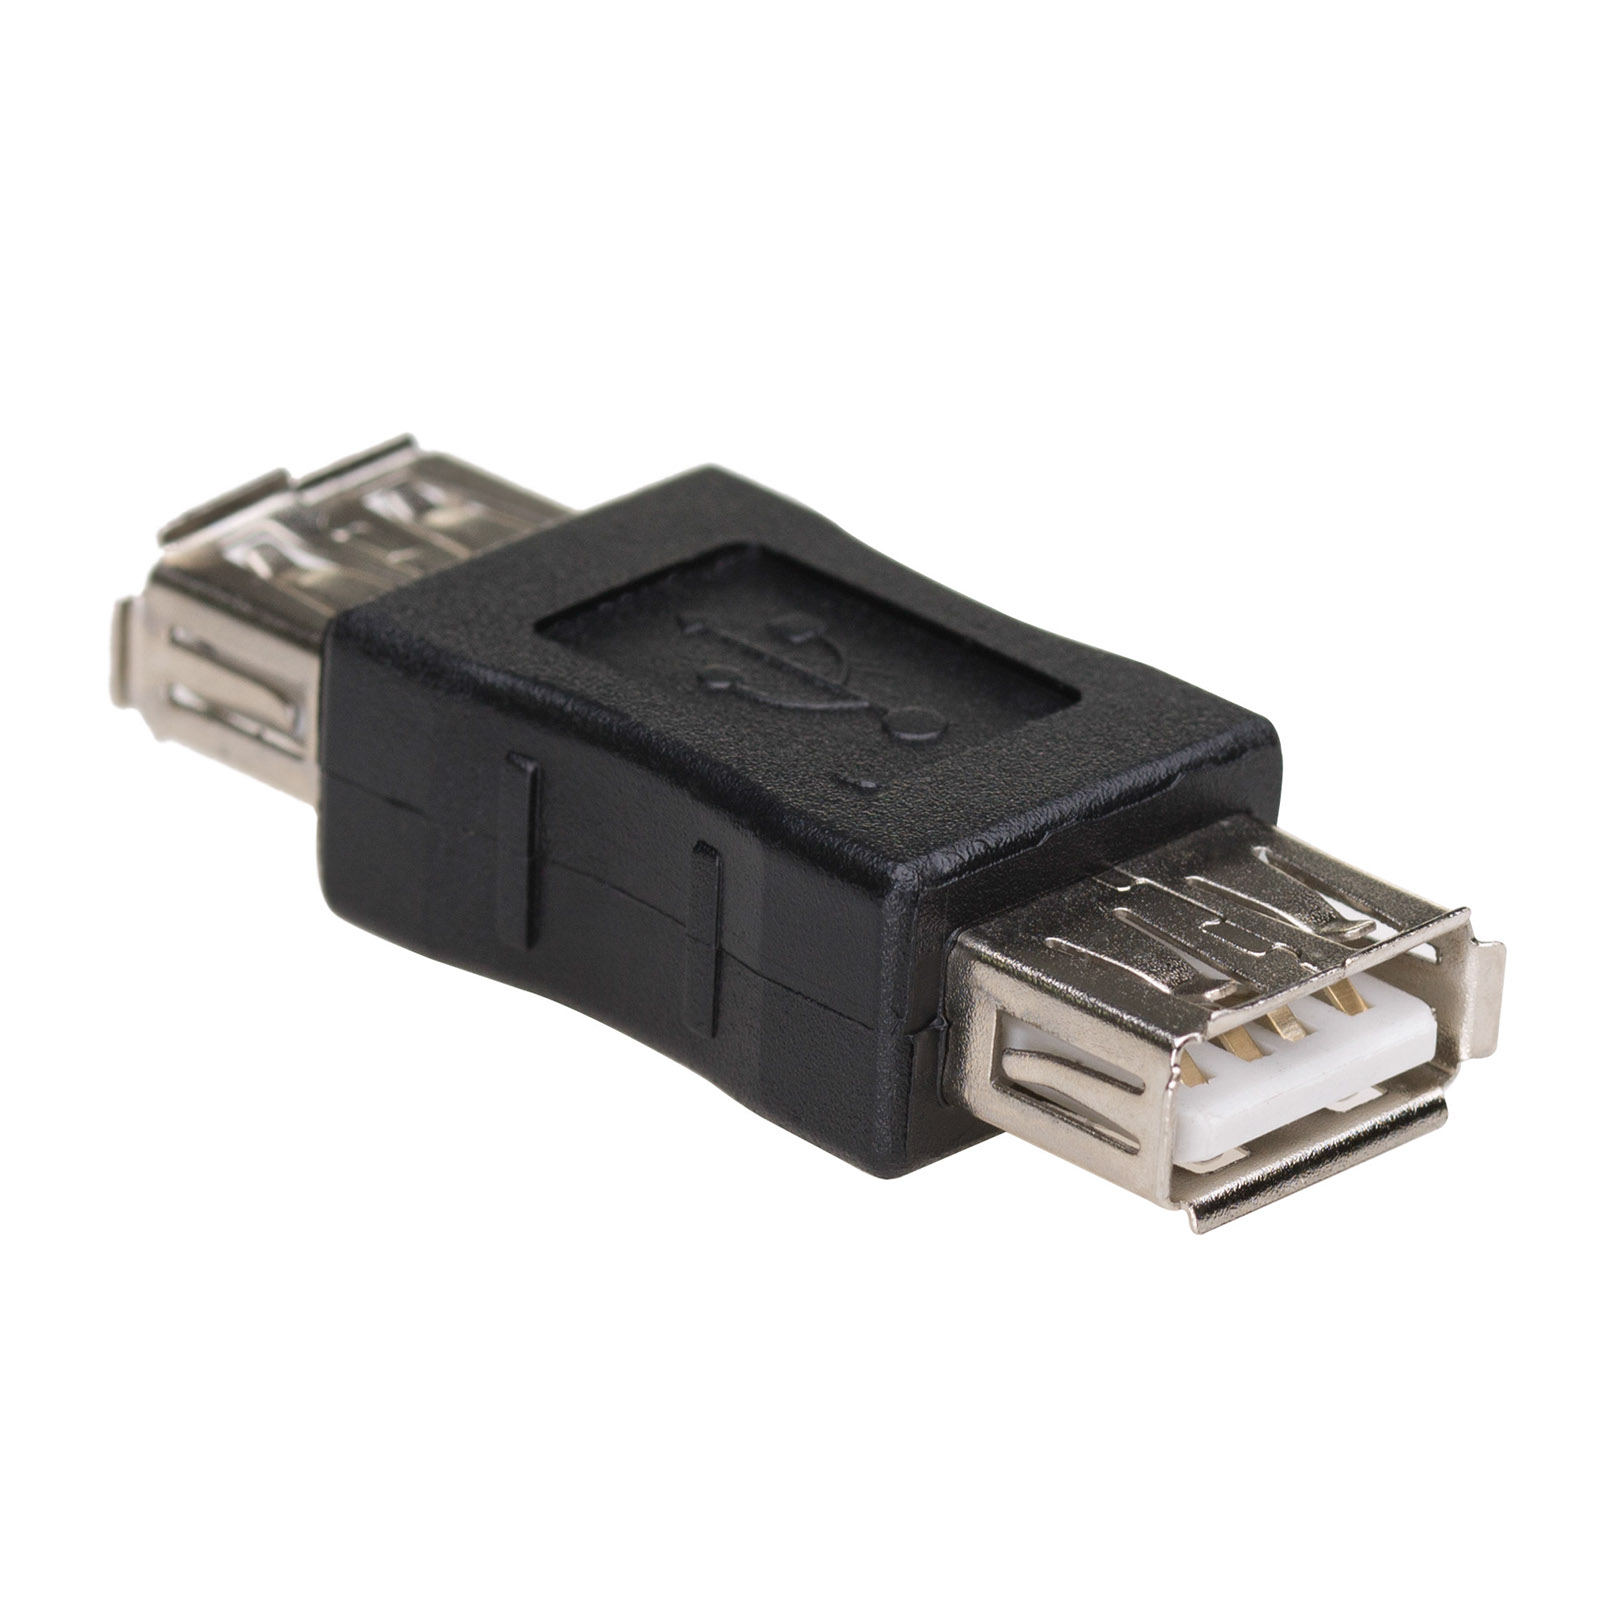 Main image Adapter AK-AD-06 USB-AF / USB-AF